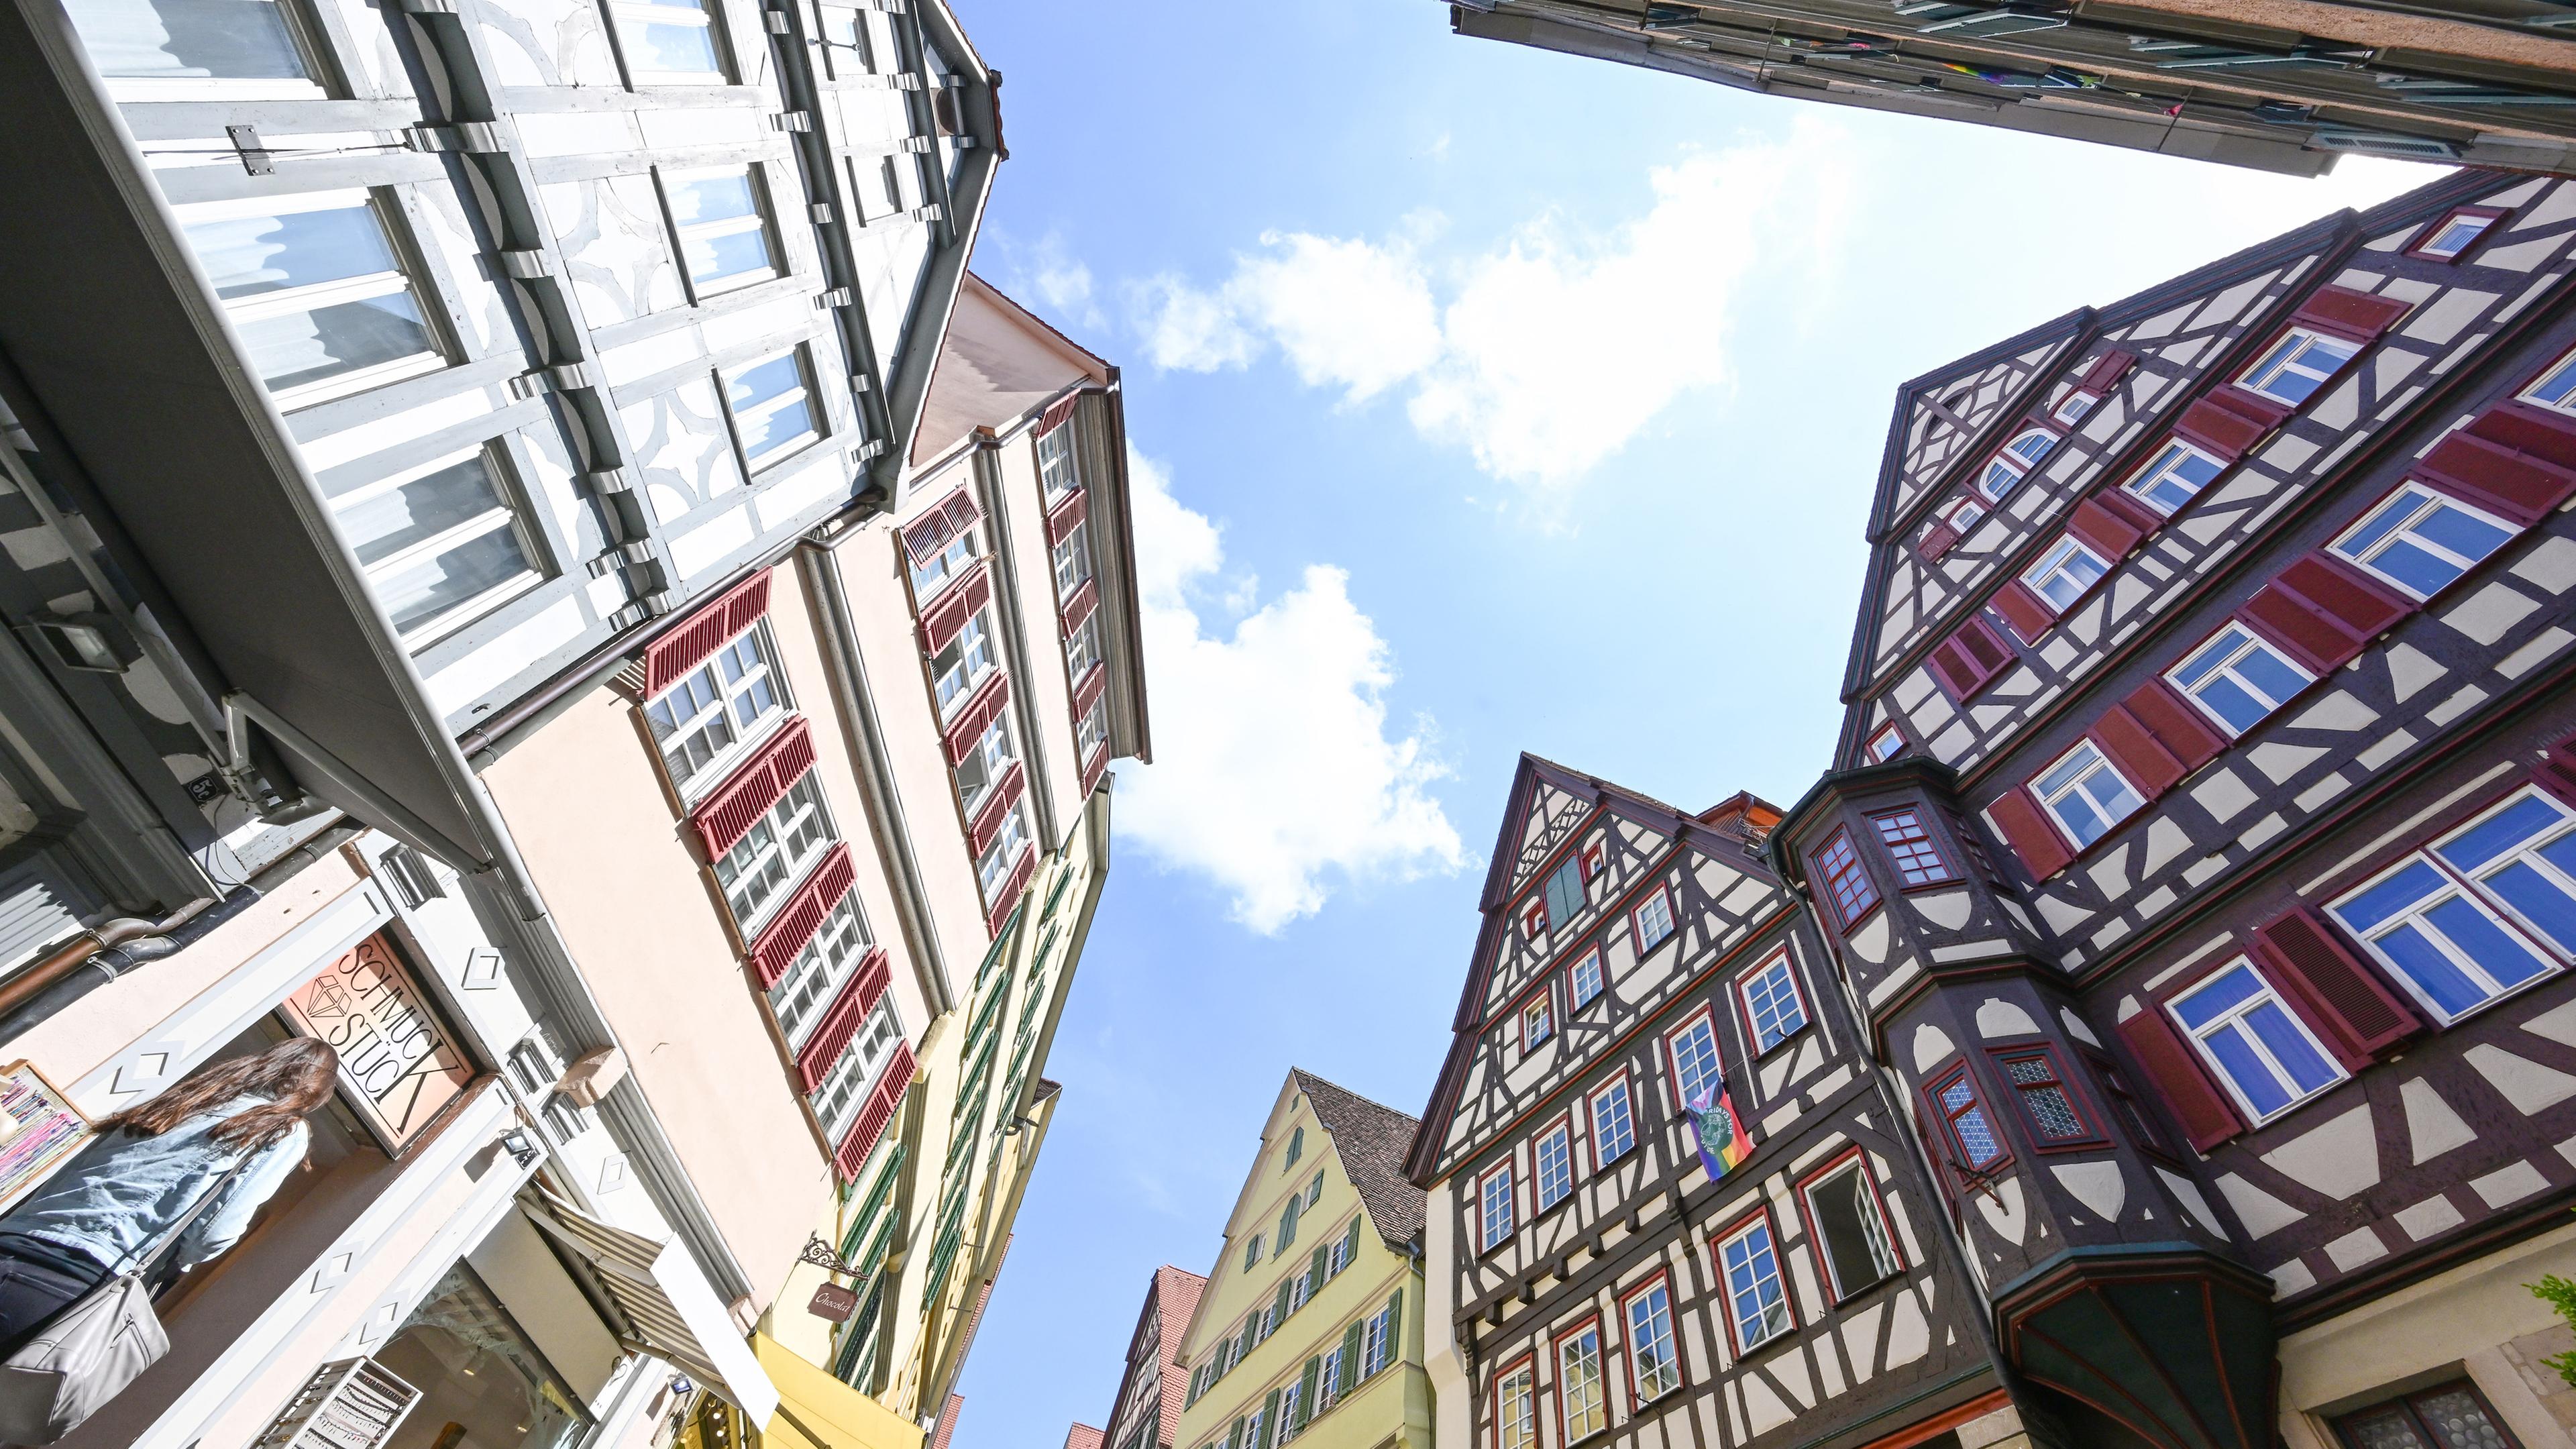 Archiv:  Fachwerkhäuser prägen das Stadtbild von Tübingen.